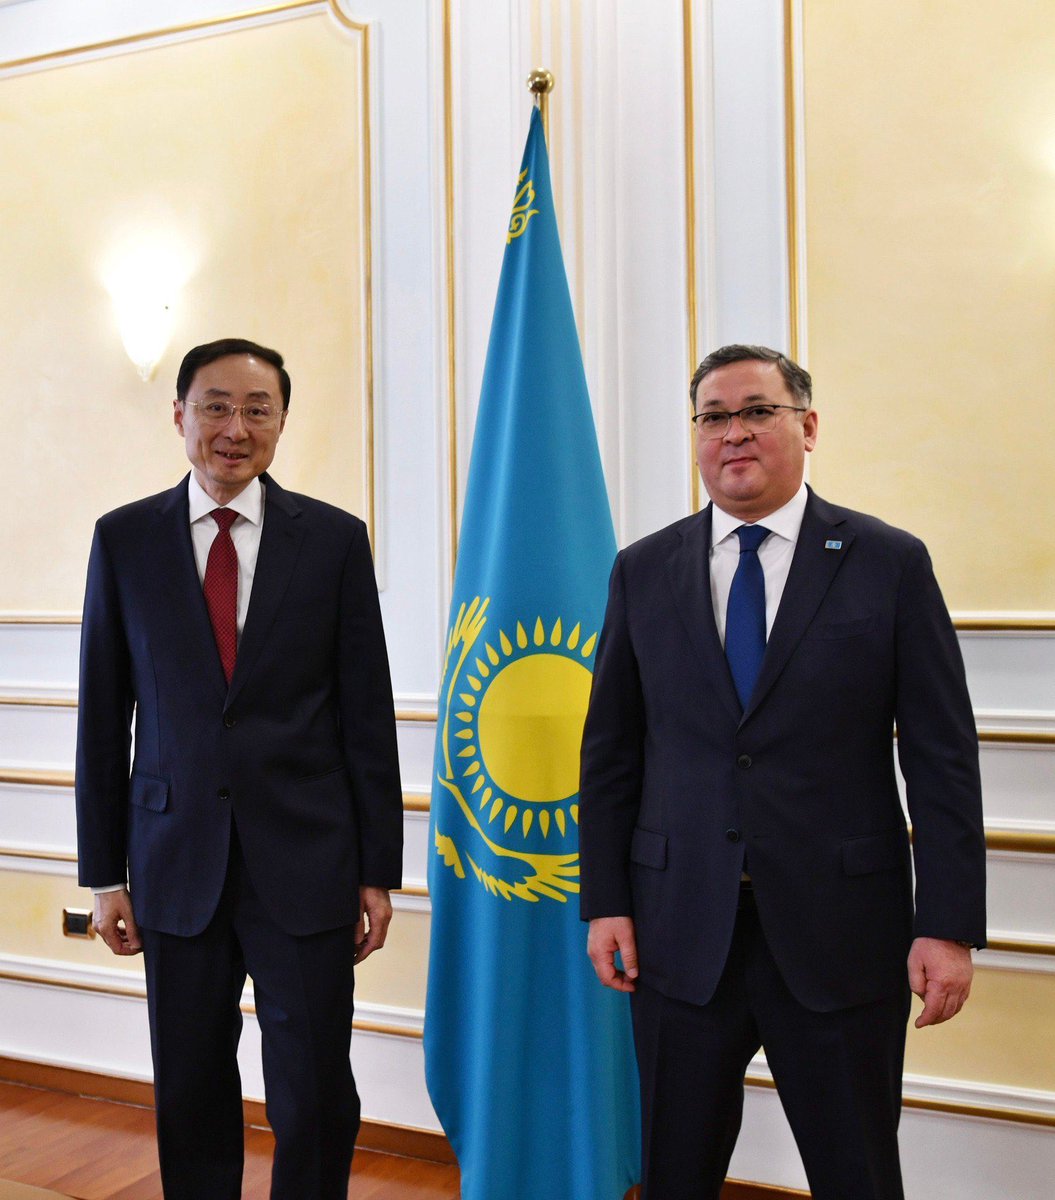 📌Çin-Kazakhstan ziyaretleri sıklaştı Kazakhstan Dışişleri Bakanı Nurtleu Astanaya gelen Çin Dışişleri Bakan Yardımcısı Weidong ile görüştü Kazakhstan -Çin stratejik diyalog kurulmasına ilişkin bir mutabakat anlaşması imzaladı ortak askeri tatbikatlar yapmayı görüştü